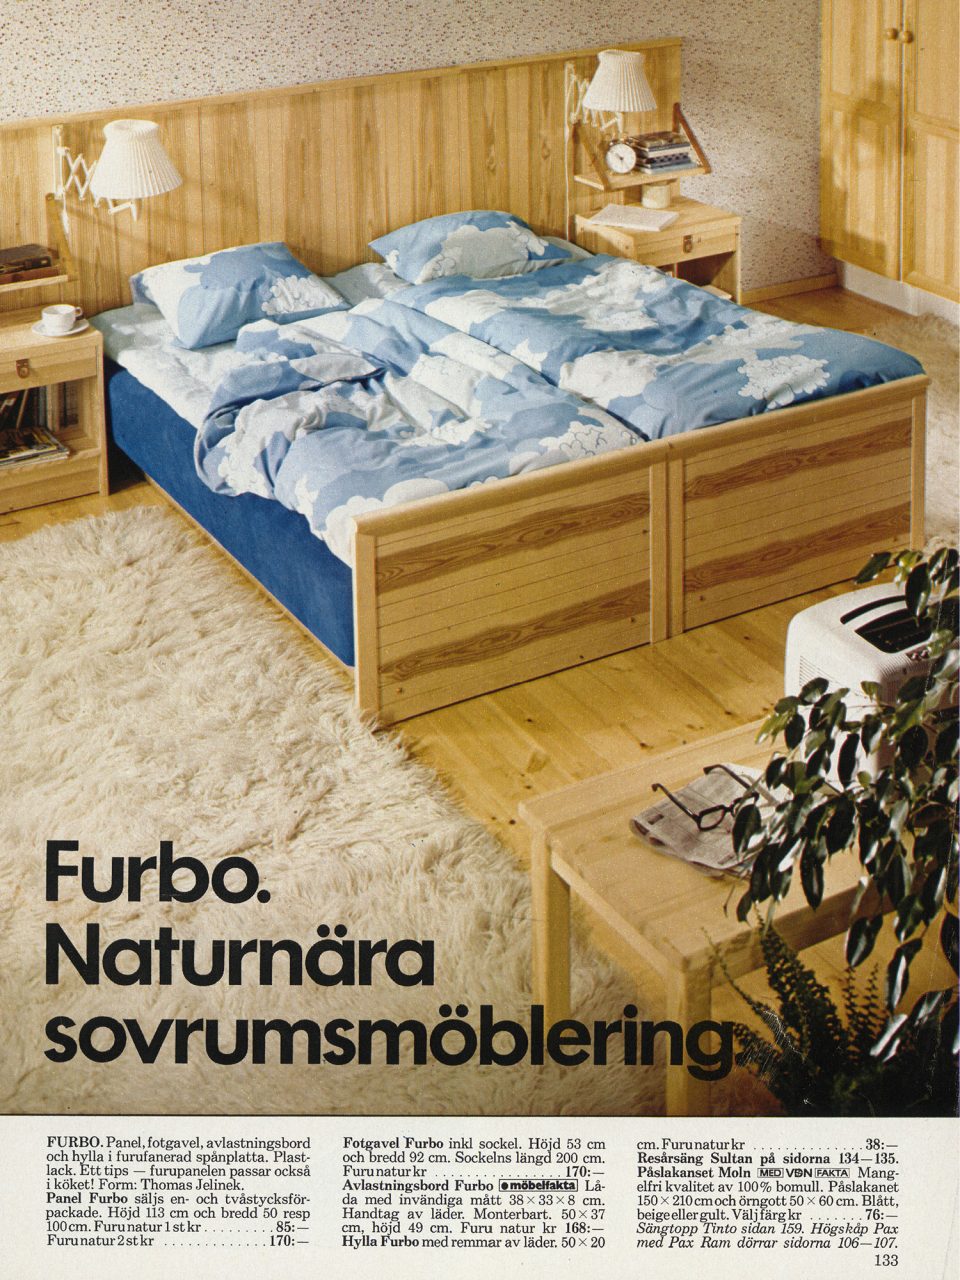 Bild ur IKEA katalogen 1977, furusäng bäddad med påslakan och örngott MOLN, himmelsblå botten med vita moln.